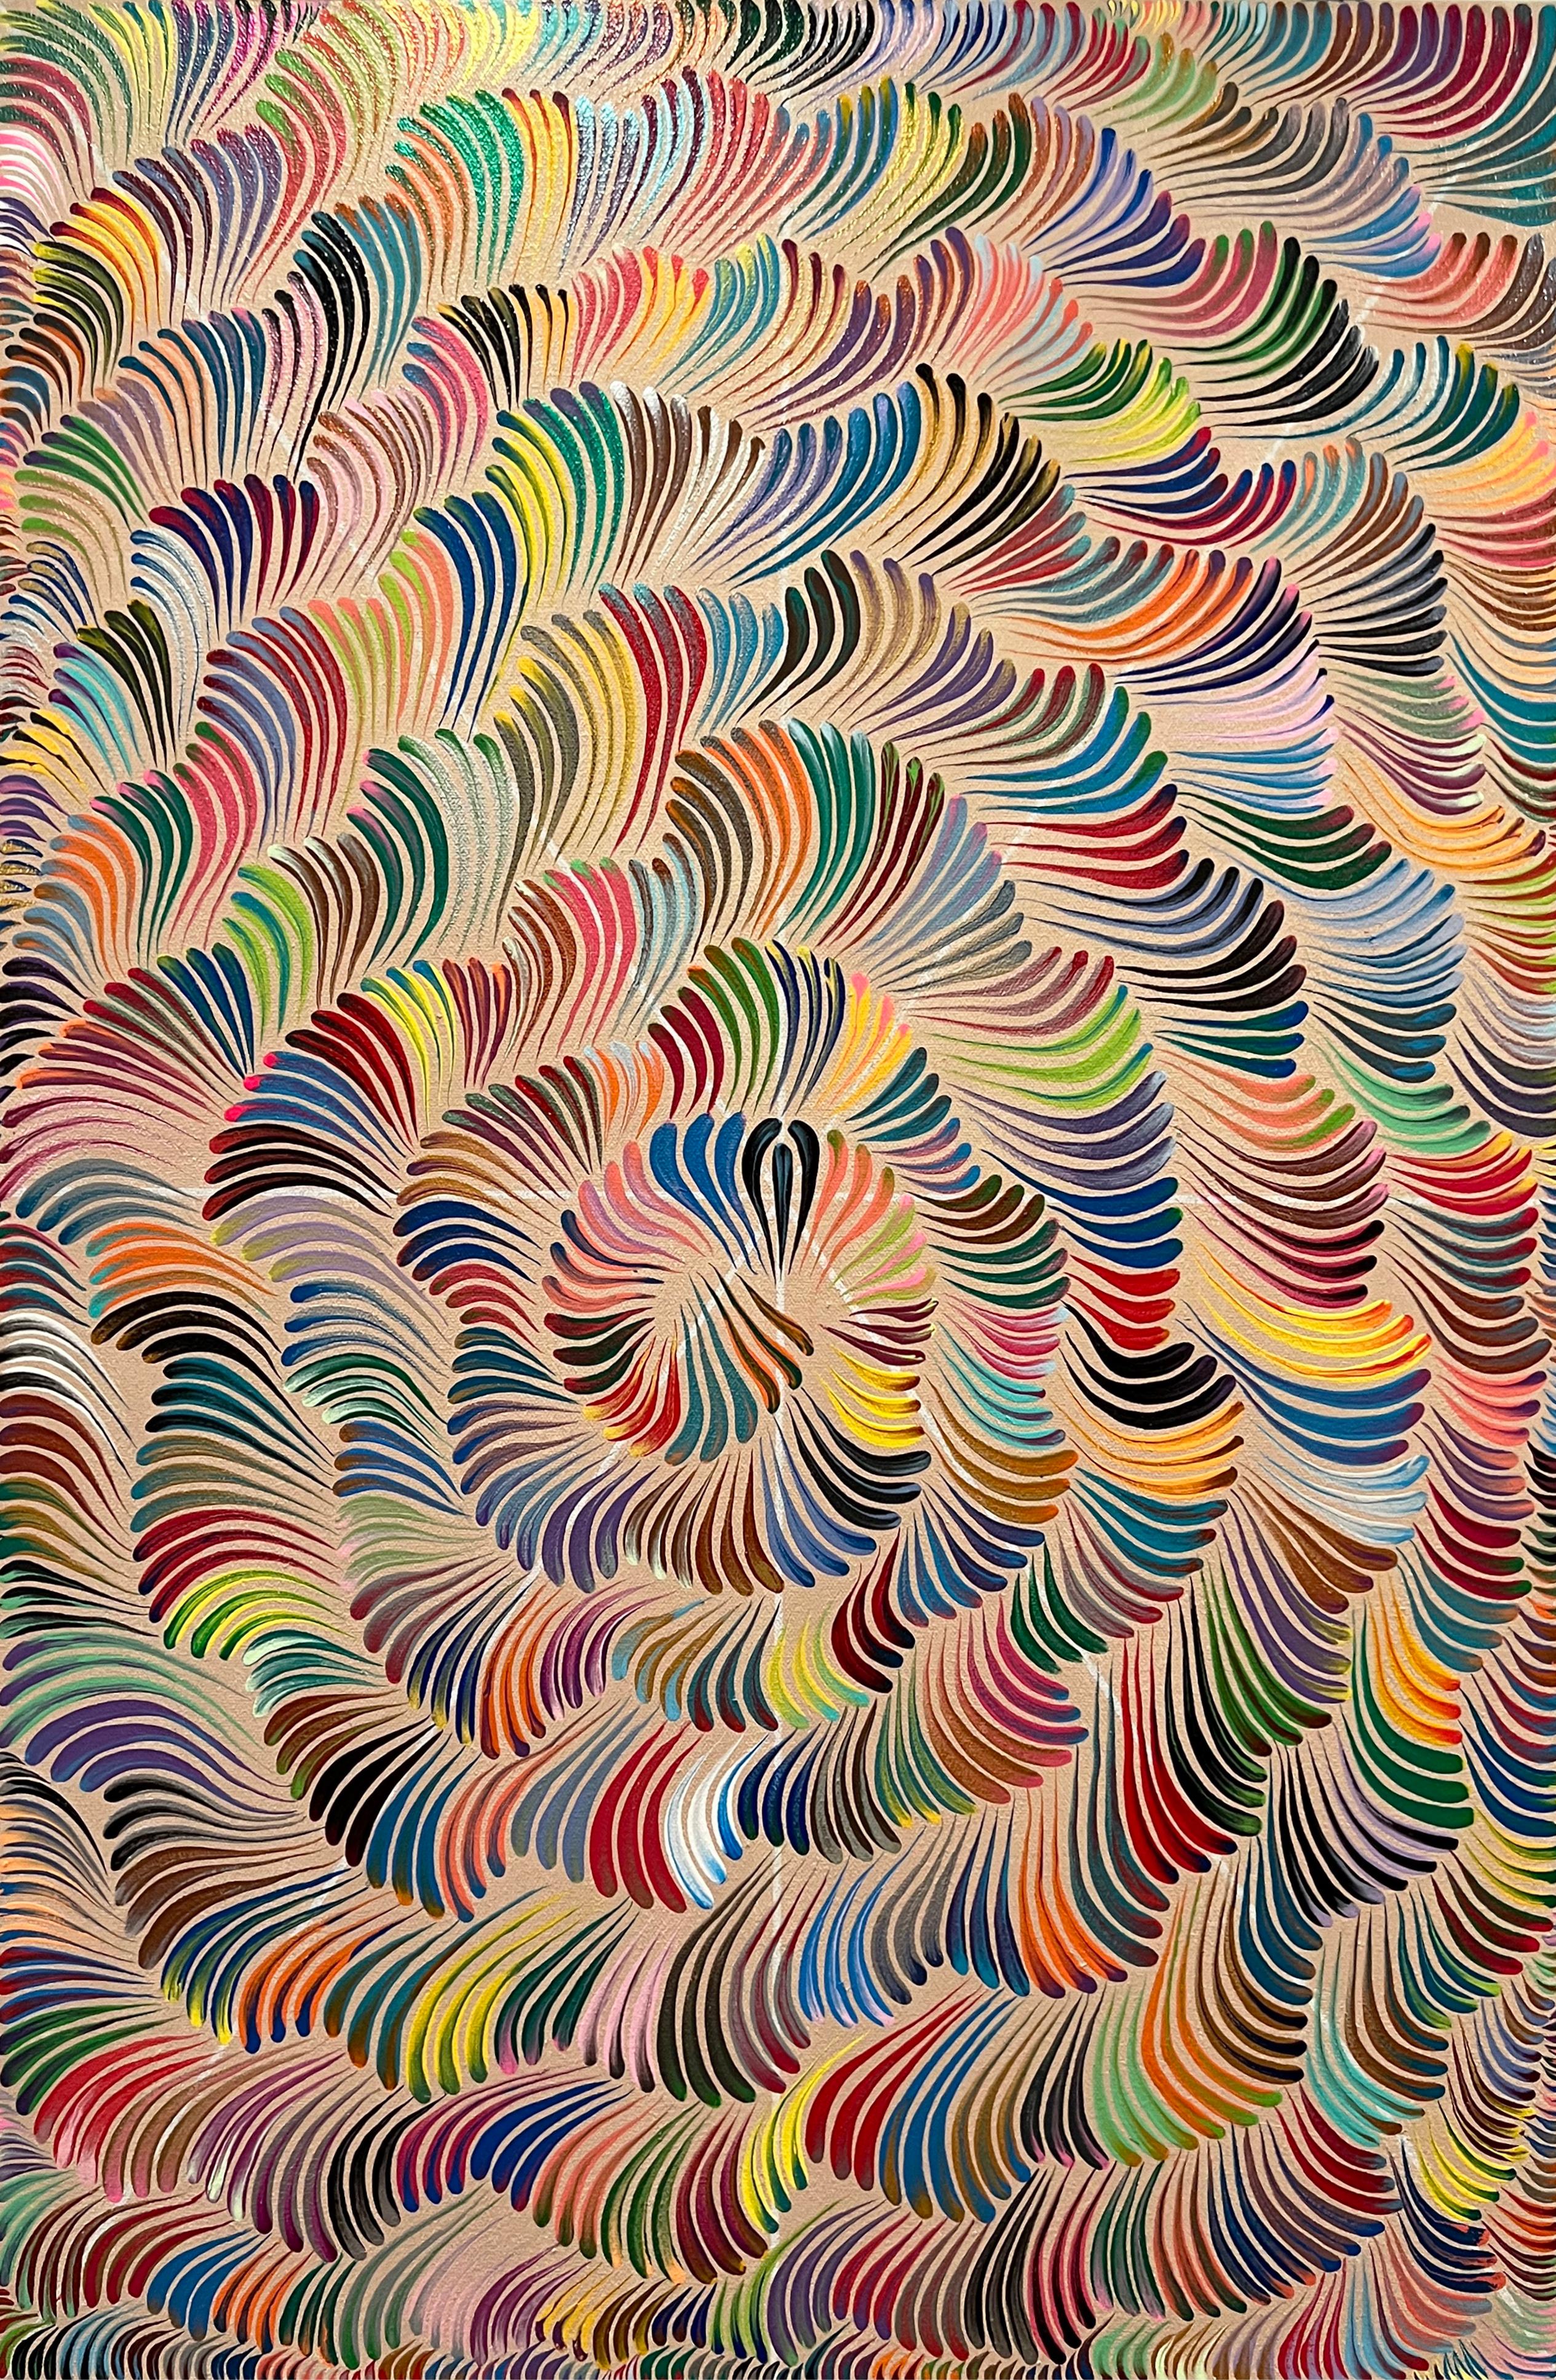 Tourbillons de couleurs contemporains, peinture abstraite vibrante inspirée de Keith Haring - Mixed Media Art de Avi Ash